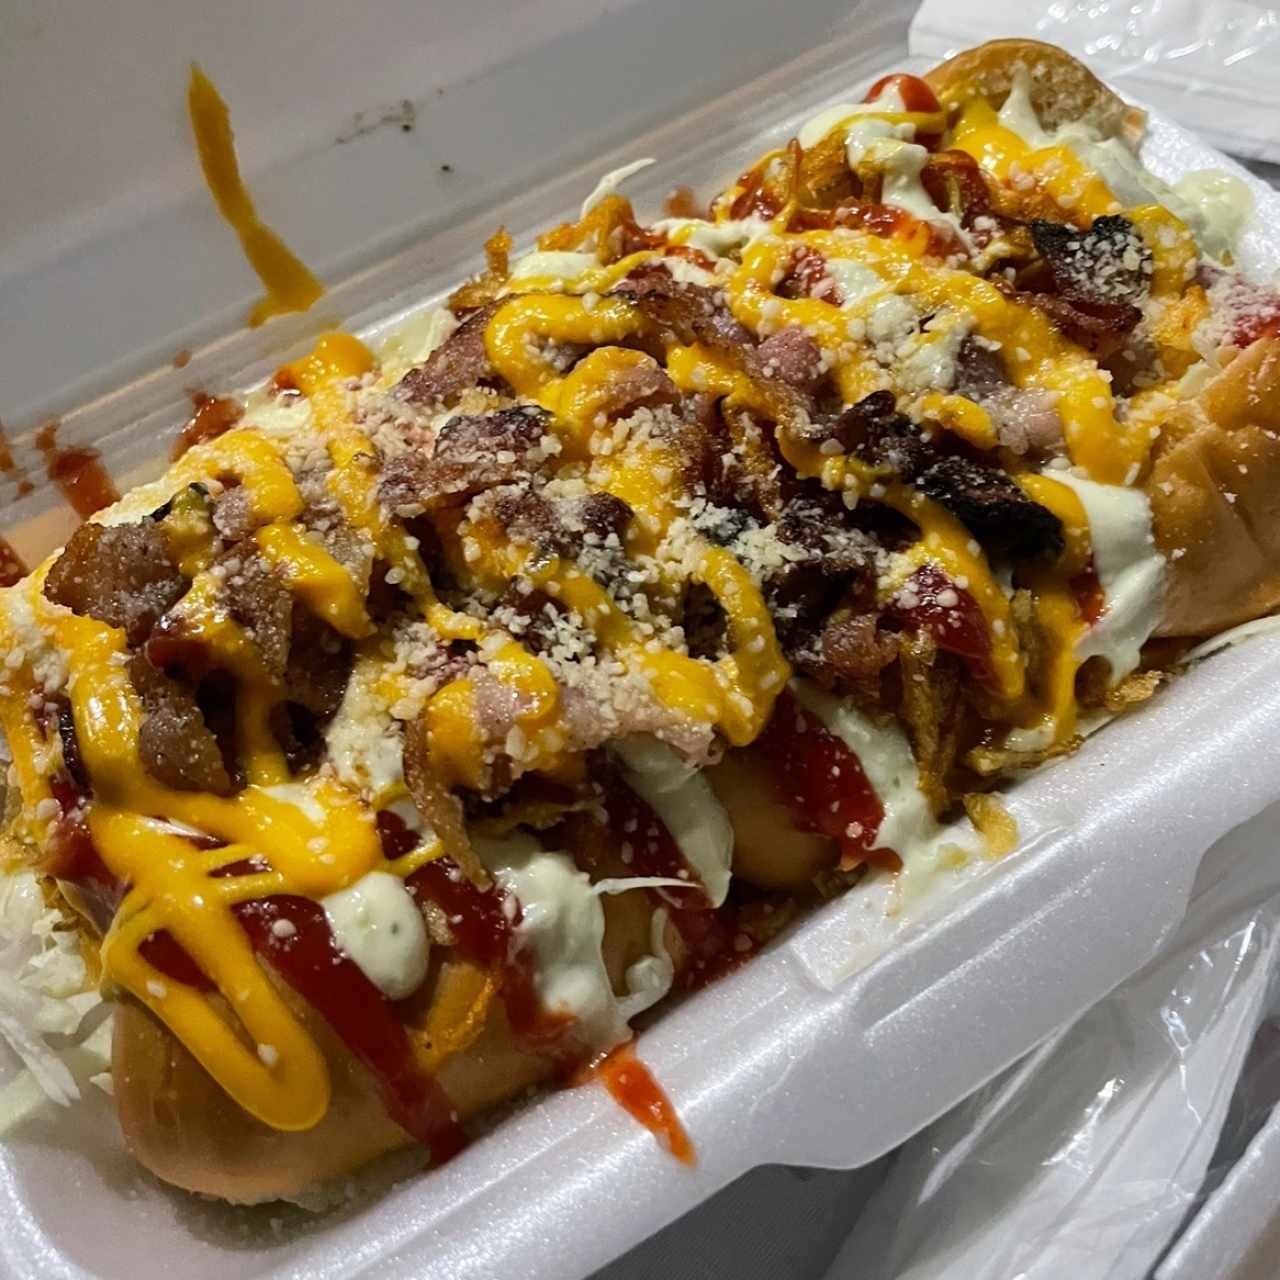 Hot Dog - Bacon Dog